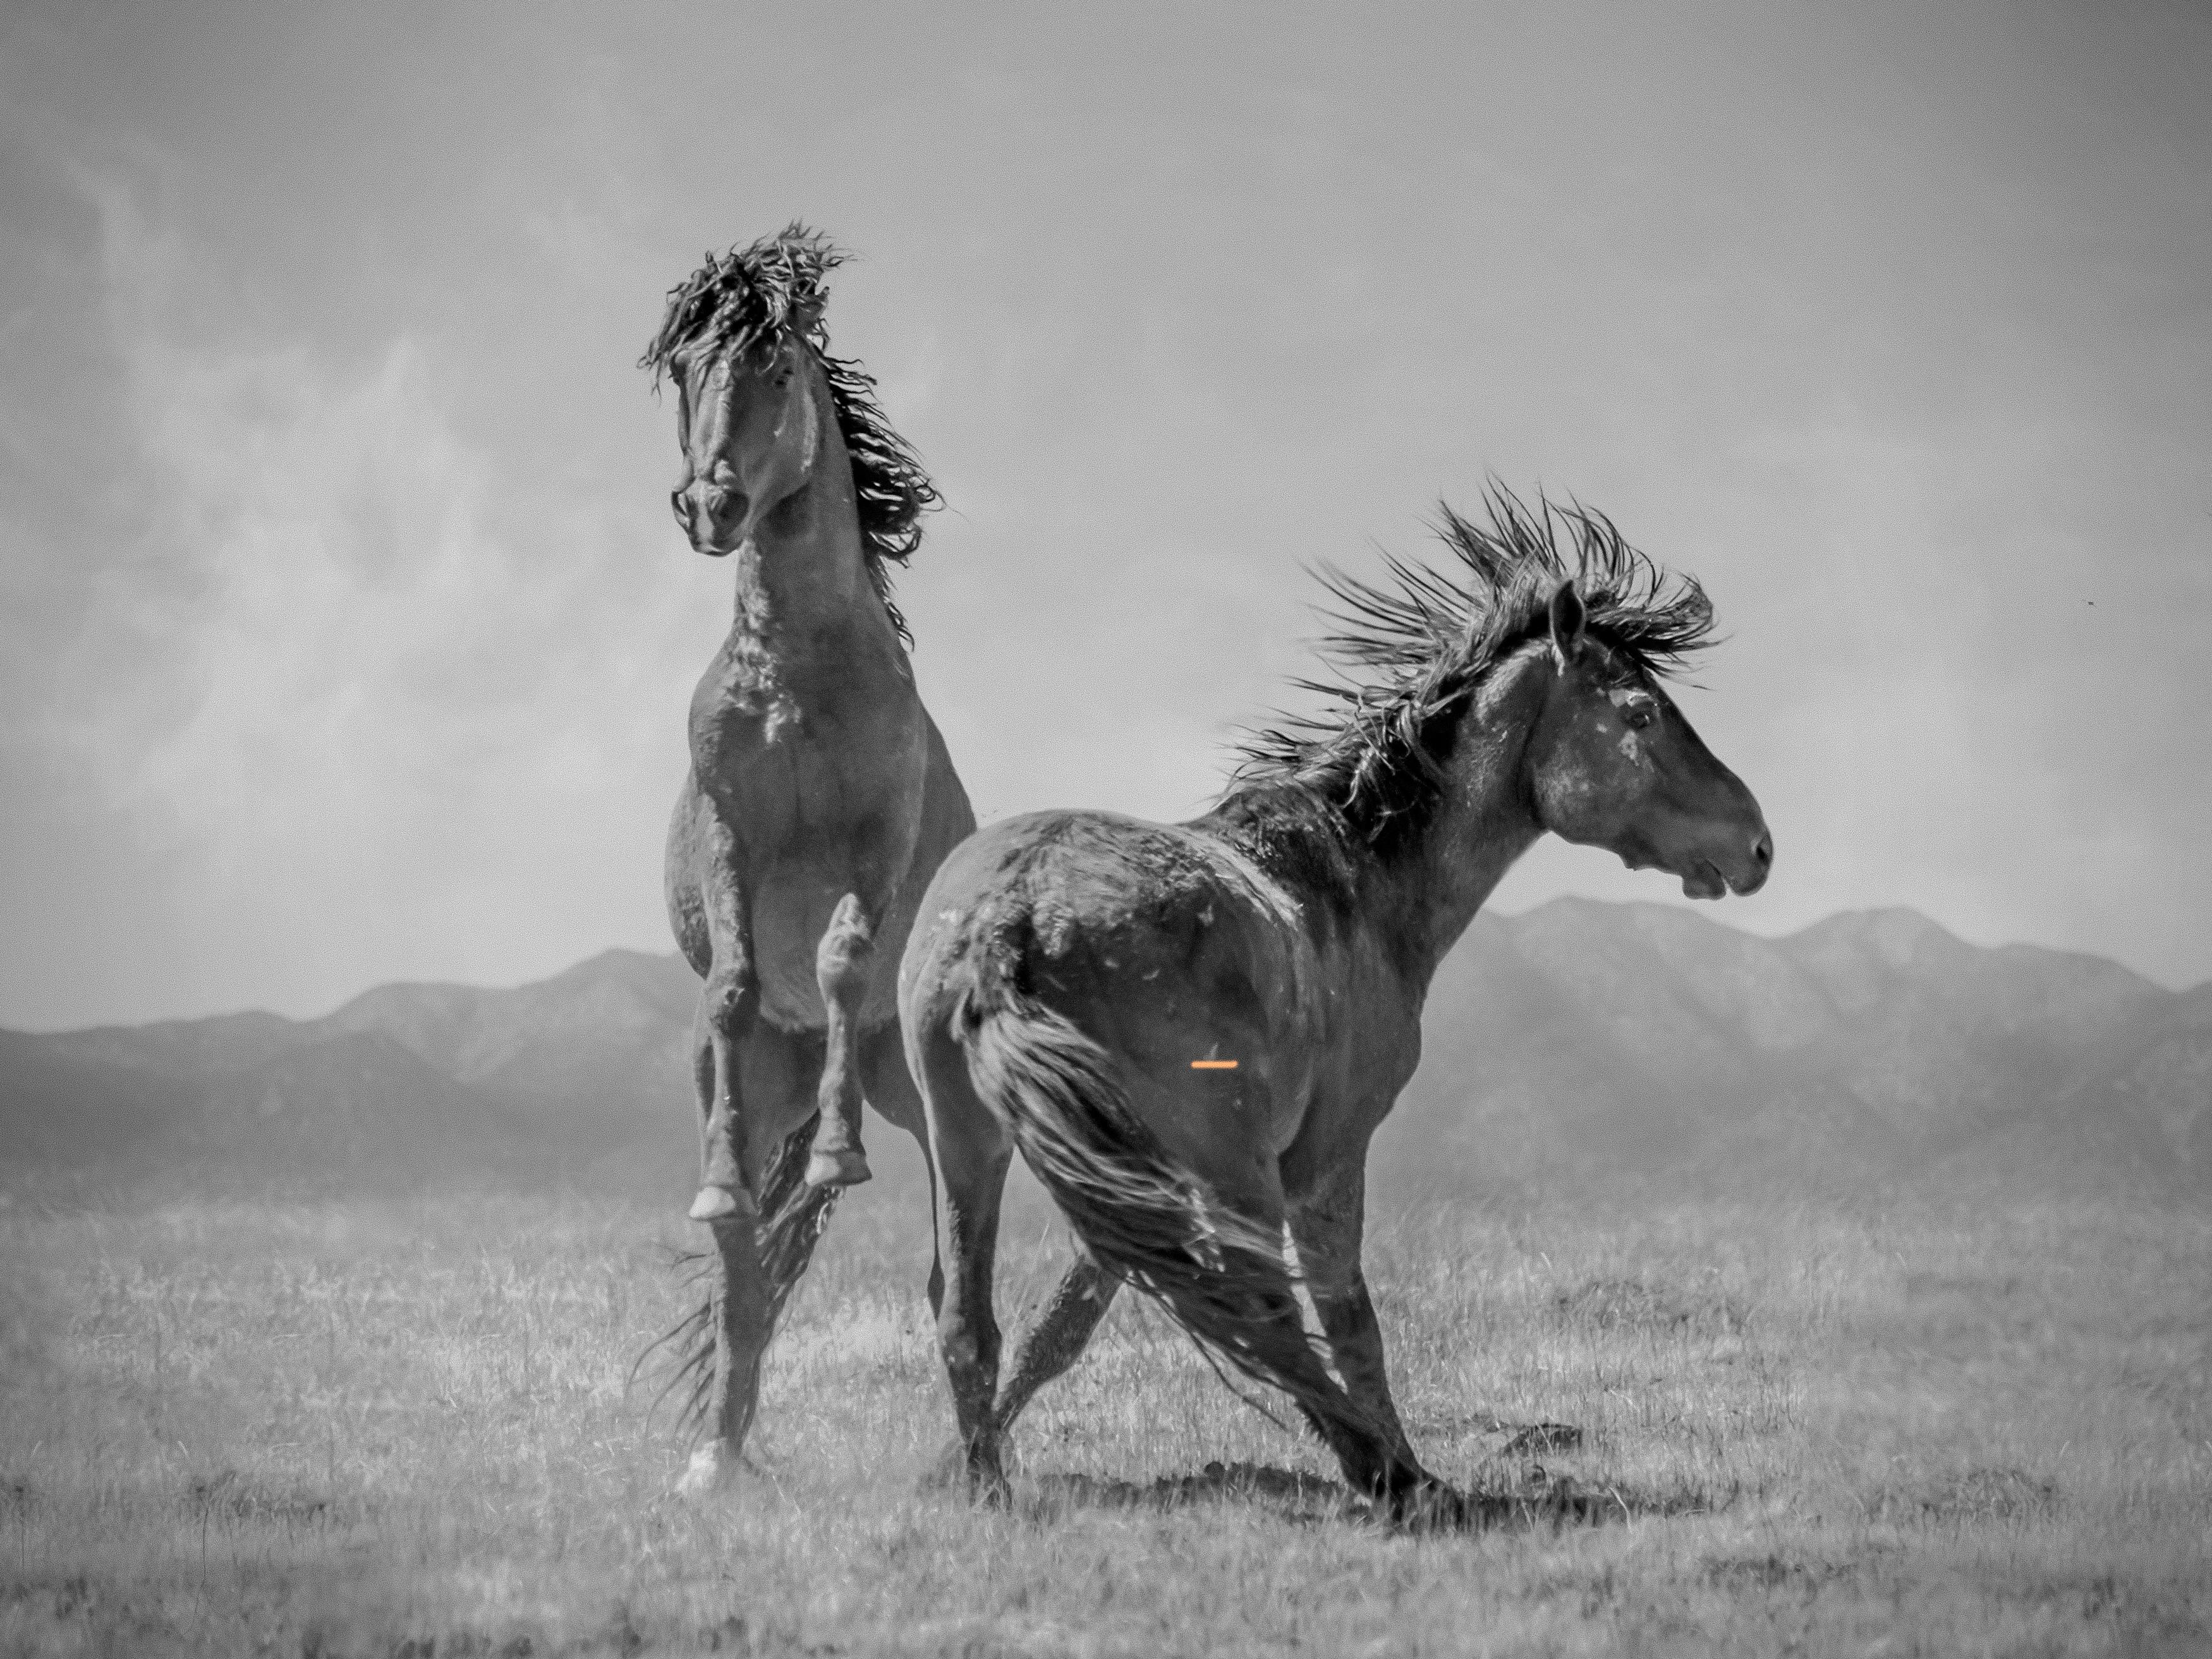 Animal Print Shane Russeck - "Wonder Horses" 36x48 - Photographie en noir et blanc, chevaux sauvages moutons non signés